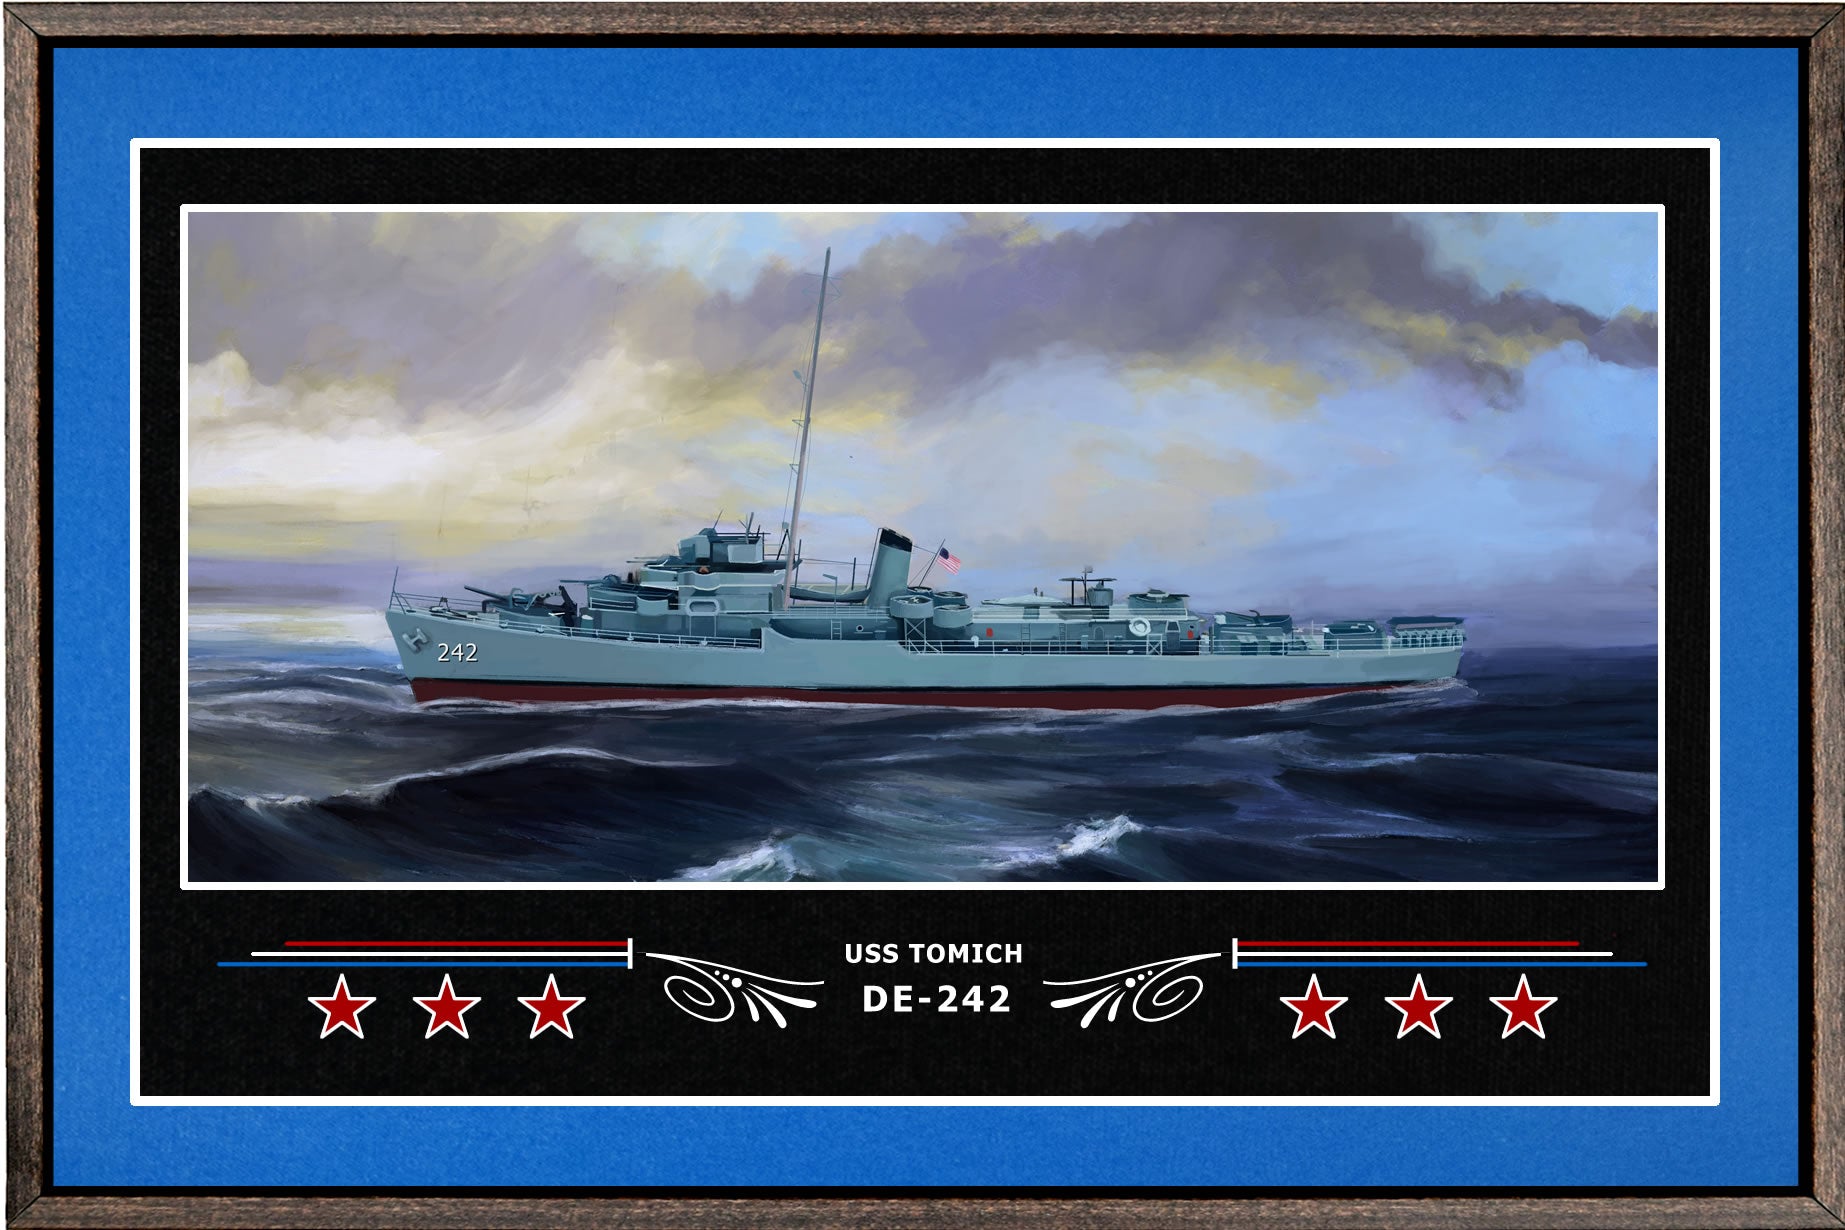 USS TOMICH DE 242 BOX FRAMED CANVAS ART BLUE